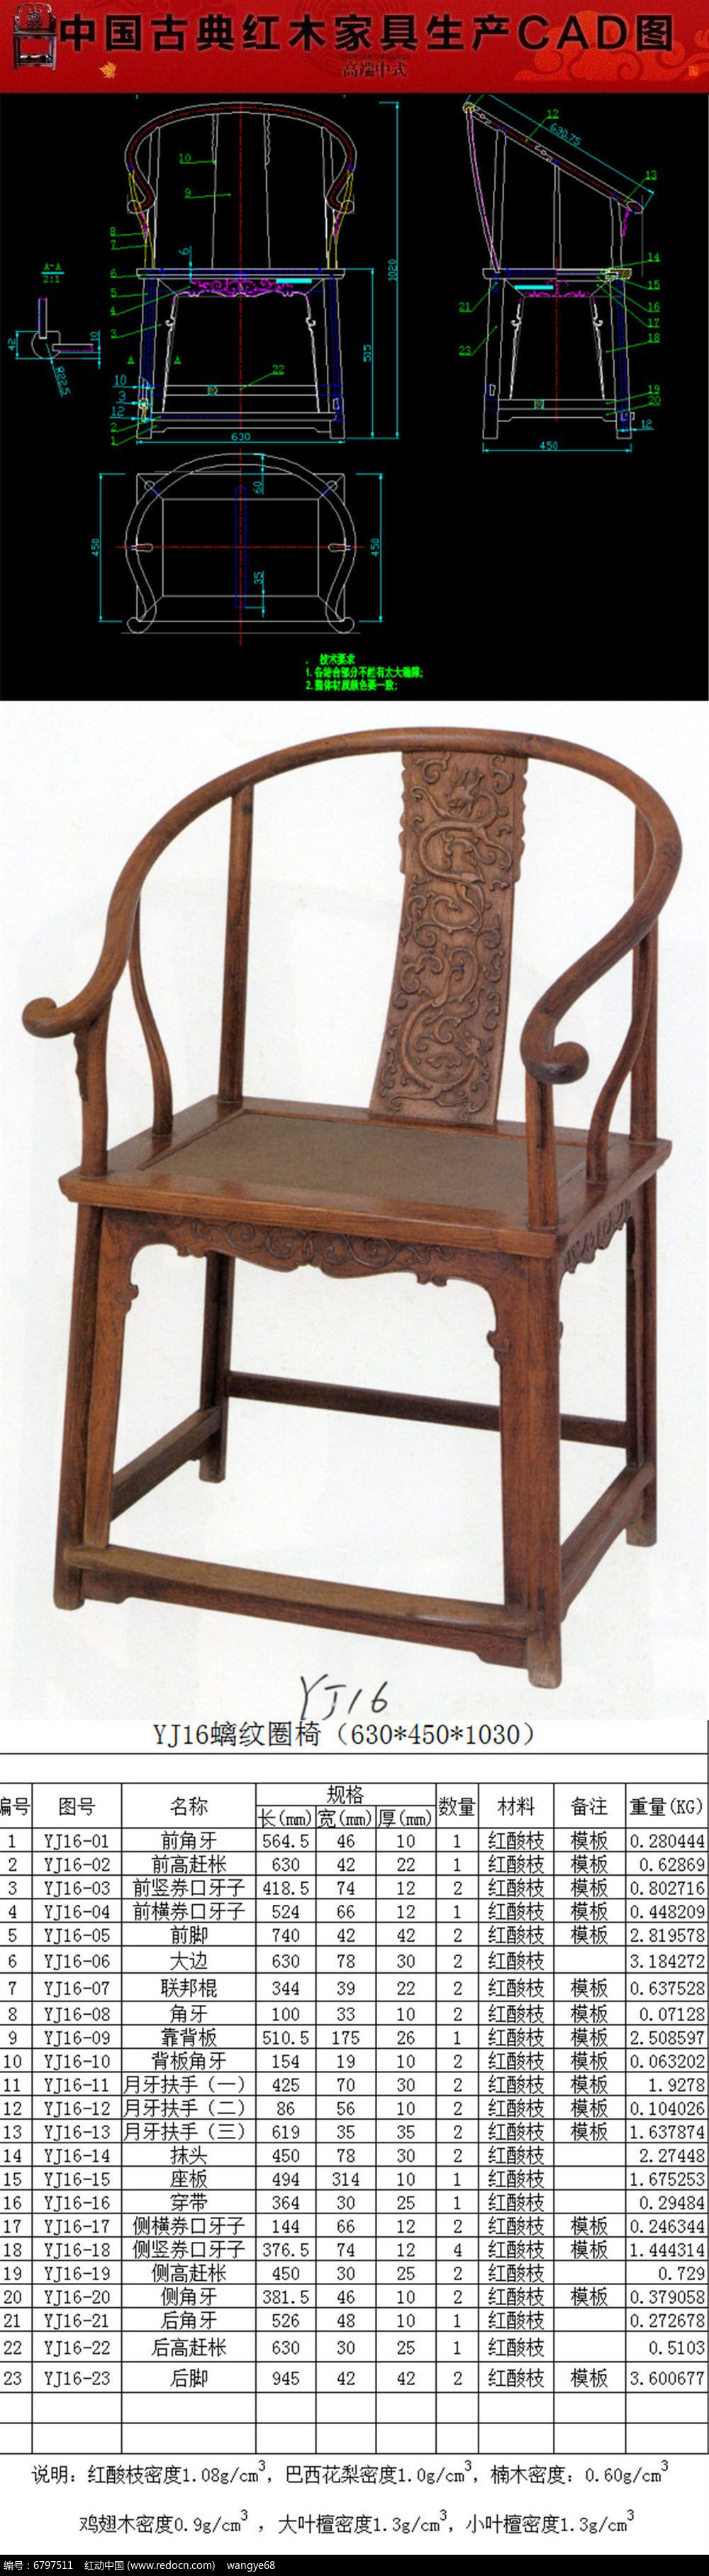 红木家具螭纹圈椅cad图纸和生产下料单